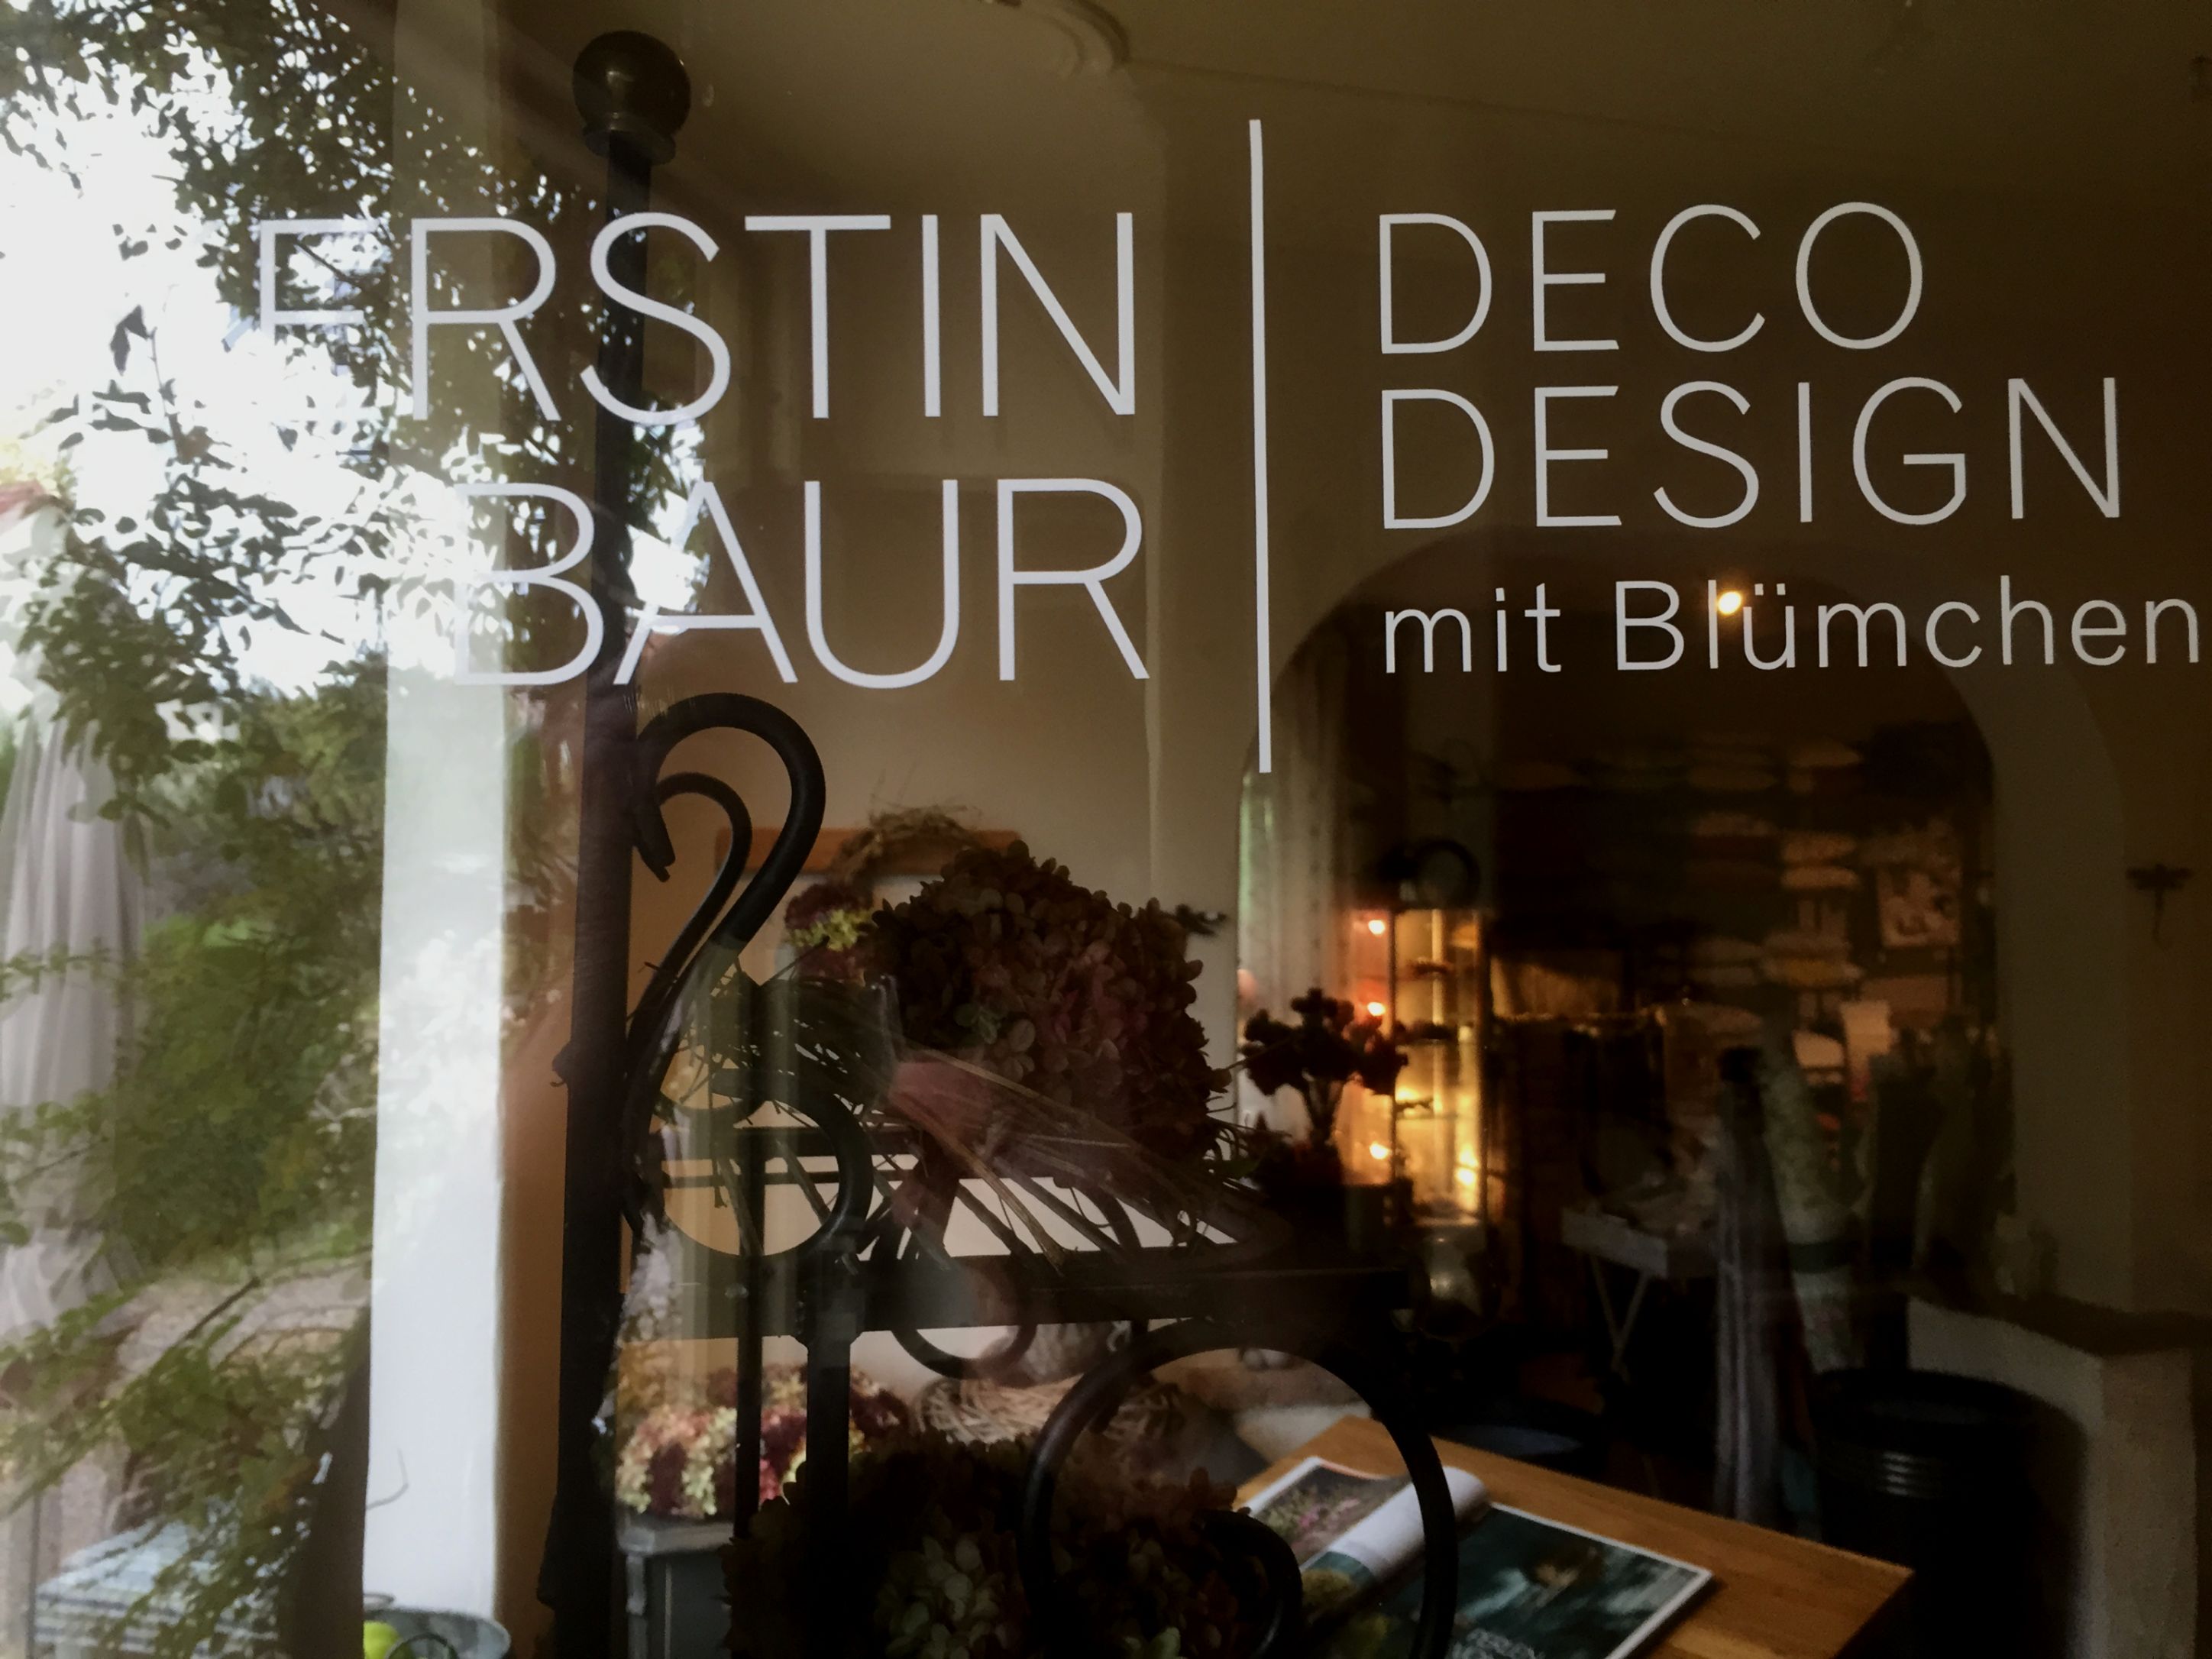 Kerstin Baur Idee-Deco-Design